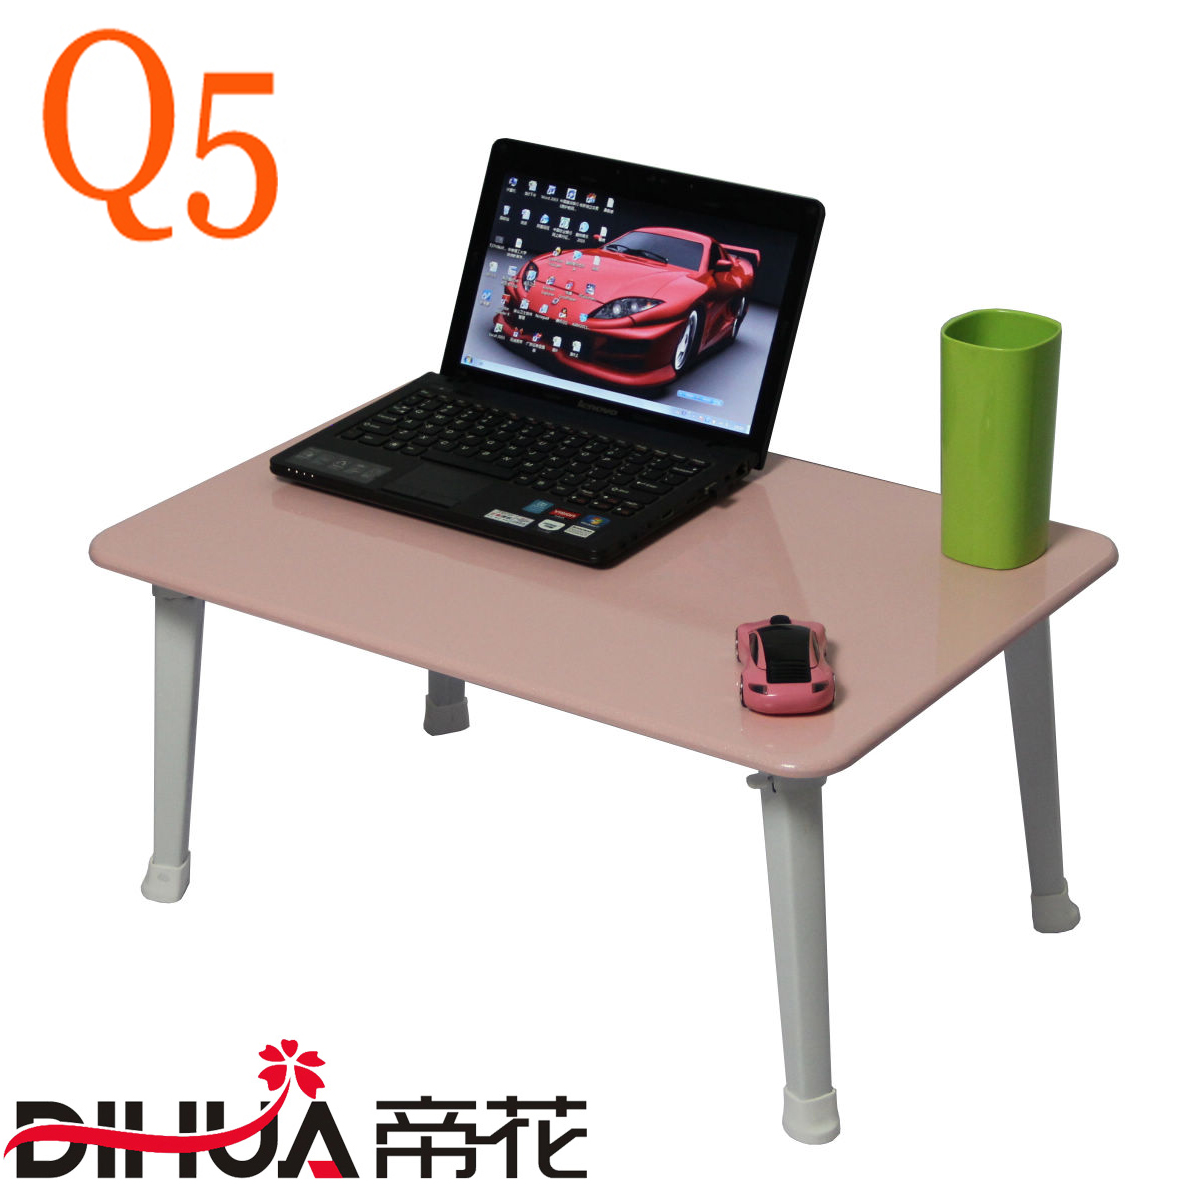 帝花 Q5黑笔记本电脑桌 床上电脑桌 床上折叠电脑台 学生桌小桌子